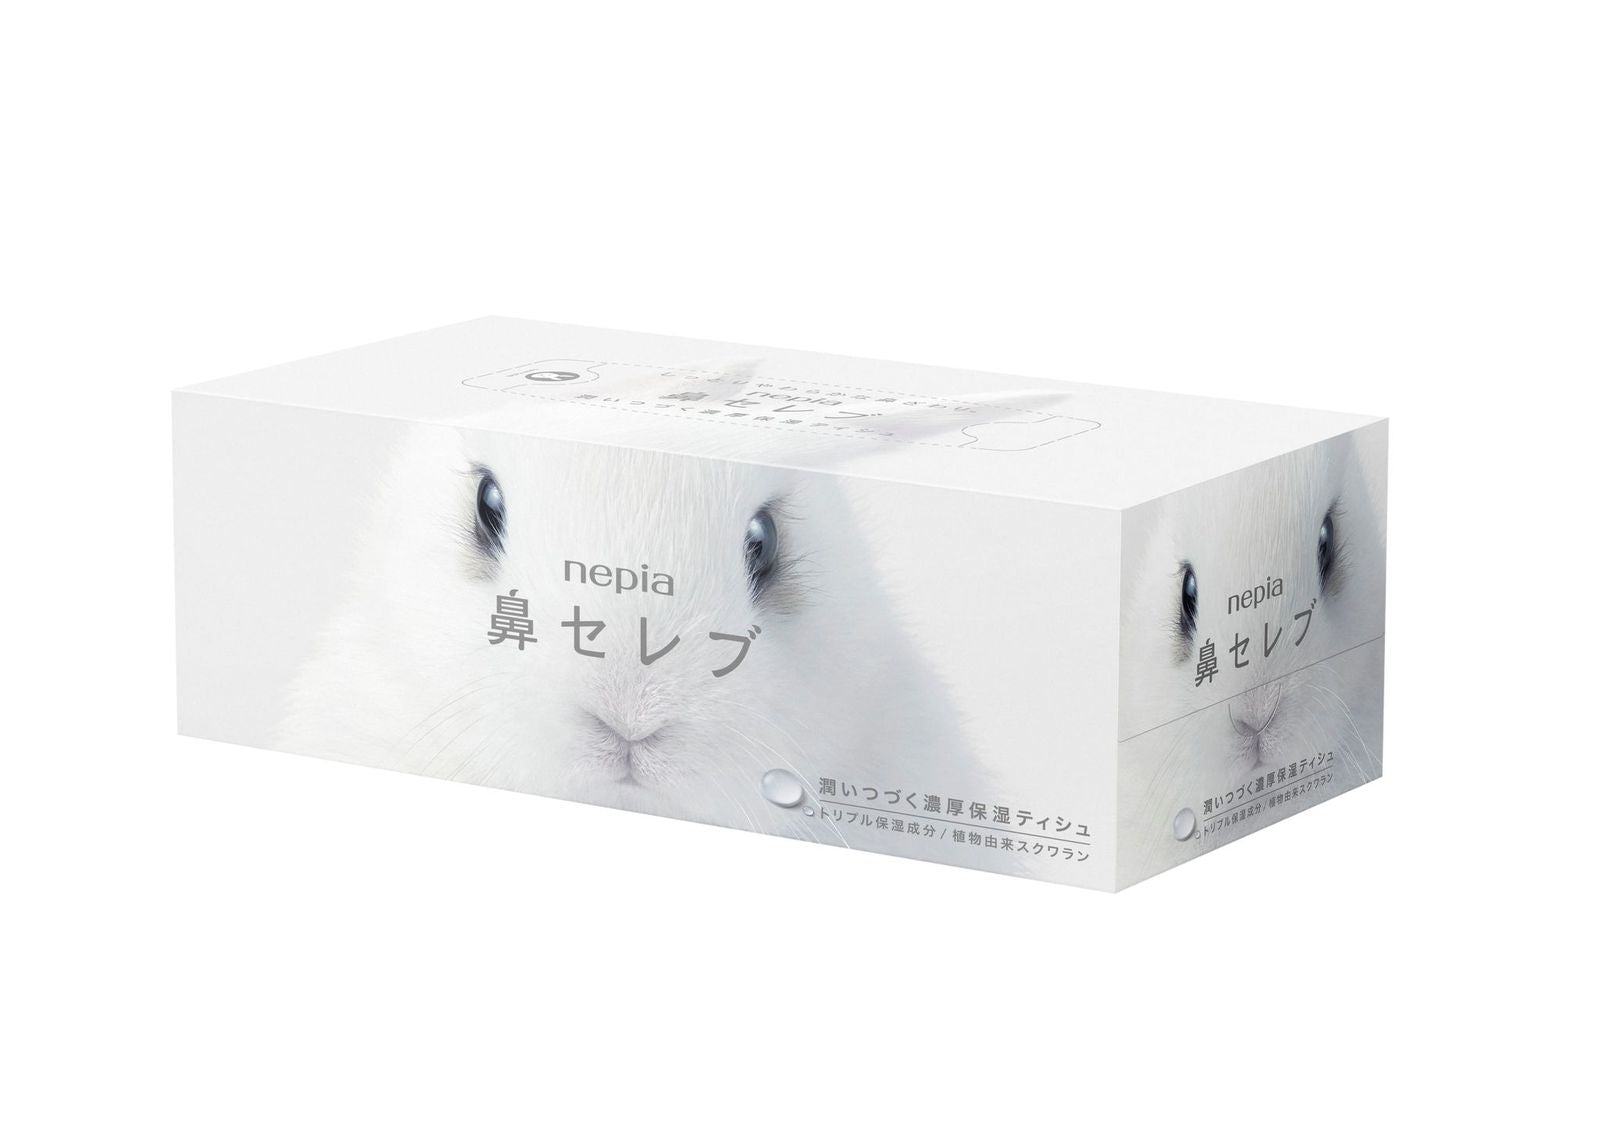 Nepia HANA CELEB Lotion Tissue - 1 Box